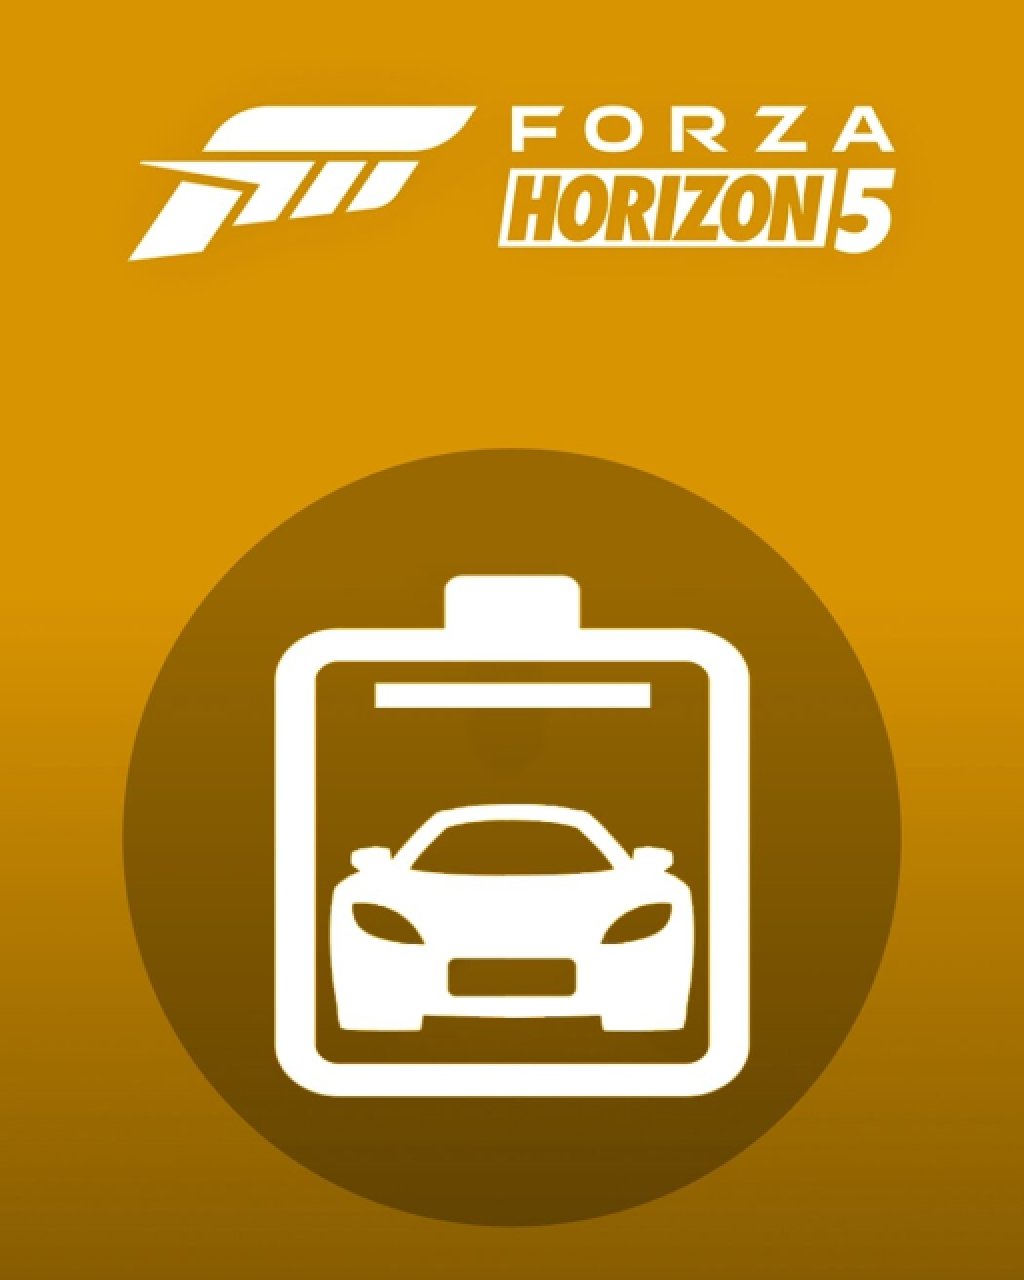 Forza Horizon 5 Car Pass